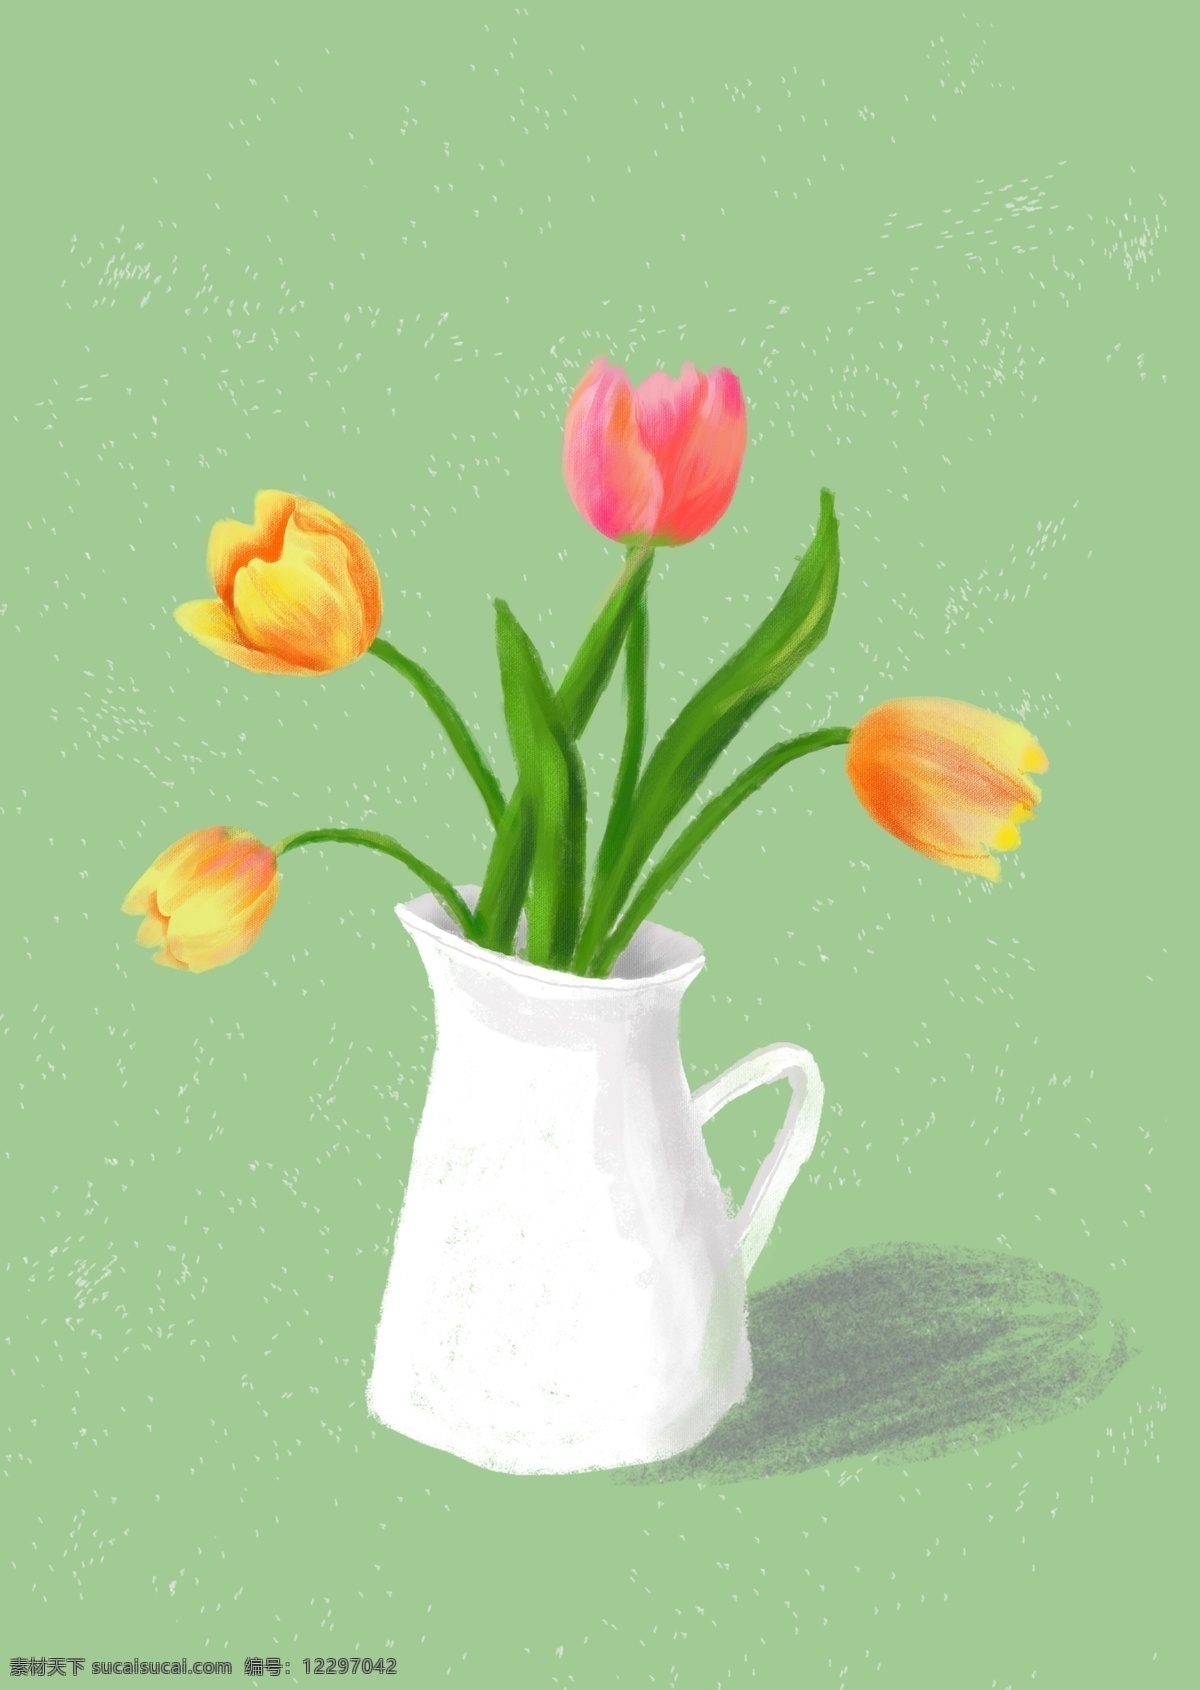 手绘 郁金香 插画 小清新 植物 花卉 绿色 粉色 文化艺术 绘画书法